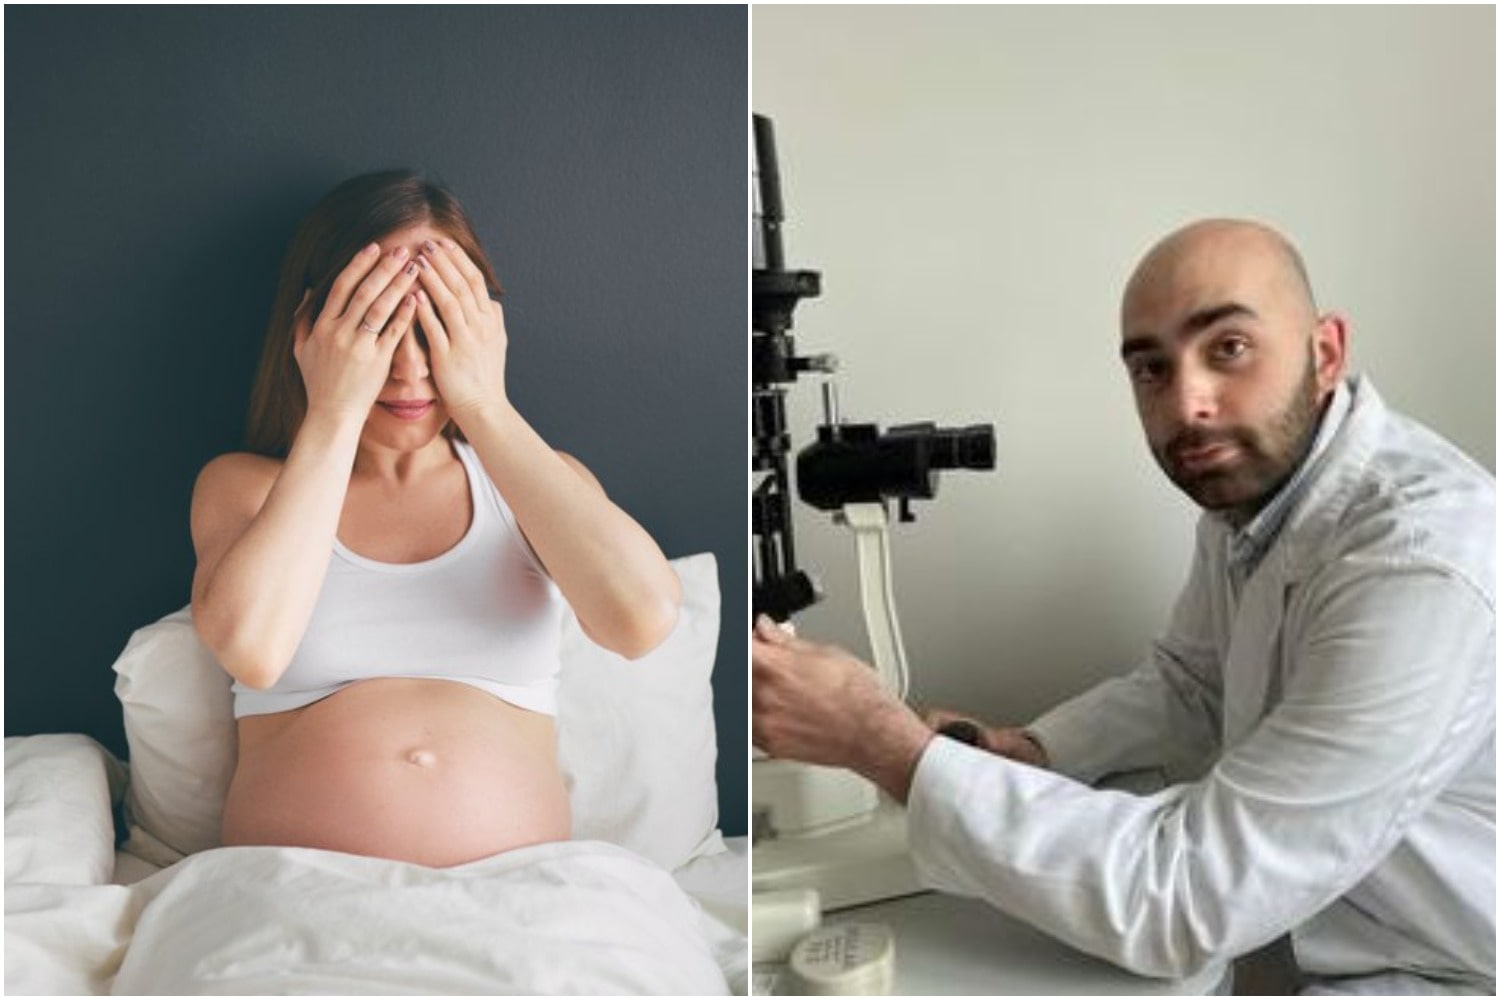 ორსულობის დროს მხედველობის პრობლემები ხშირია და ძირითადად მშობიარობის შემდგომ პერიოდში აღდგება, თუმცა გარკვეულ შემთხვევაში შეიძლება მიუთითებდეს სხვა ორგანოს დაავადებასაც